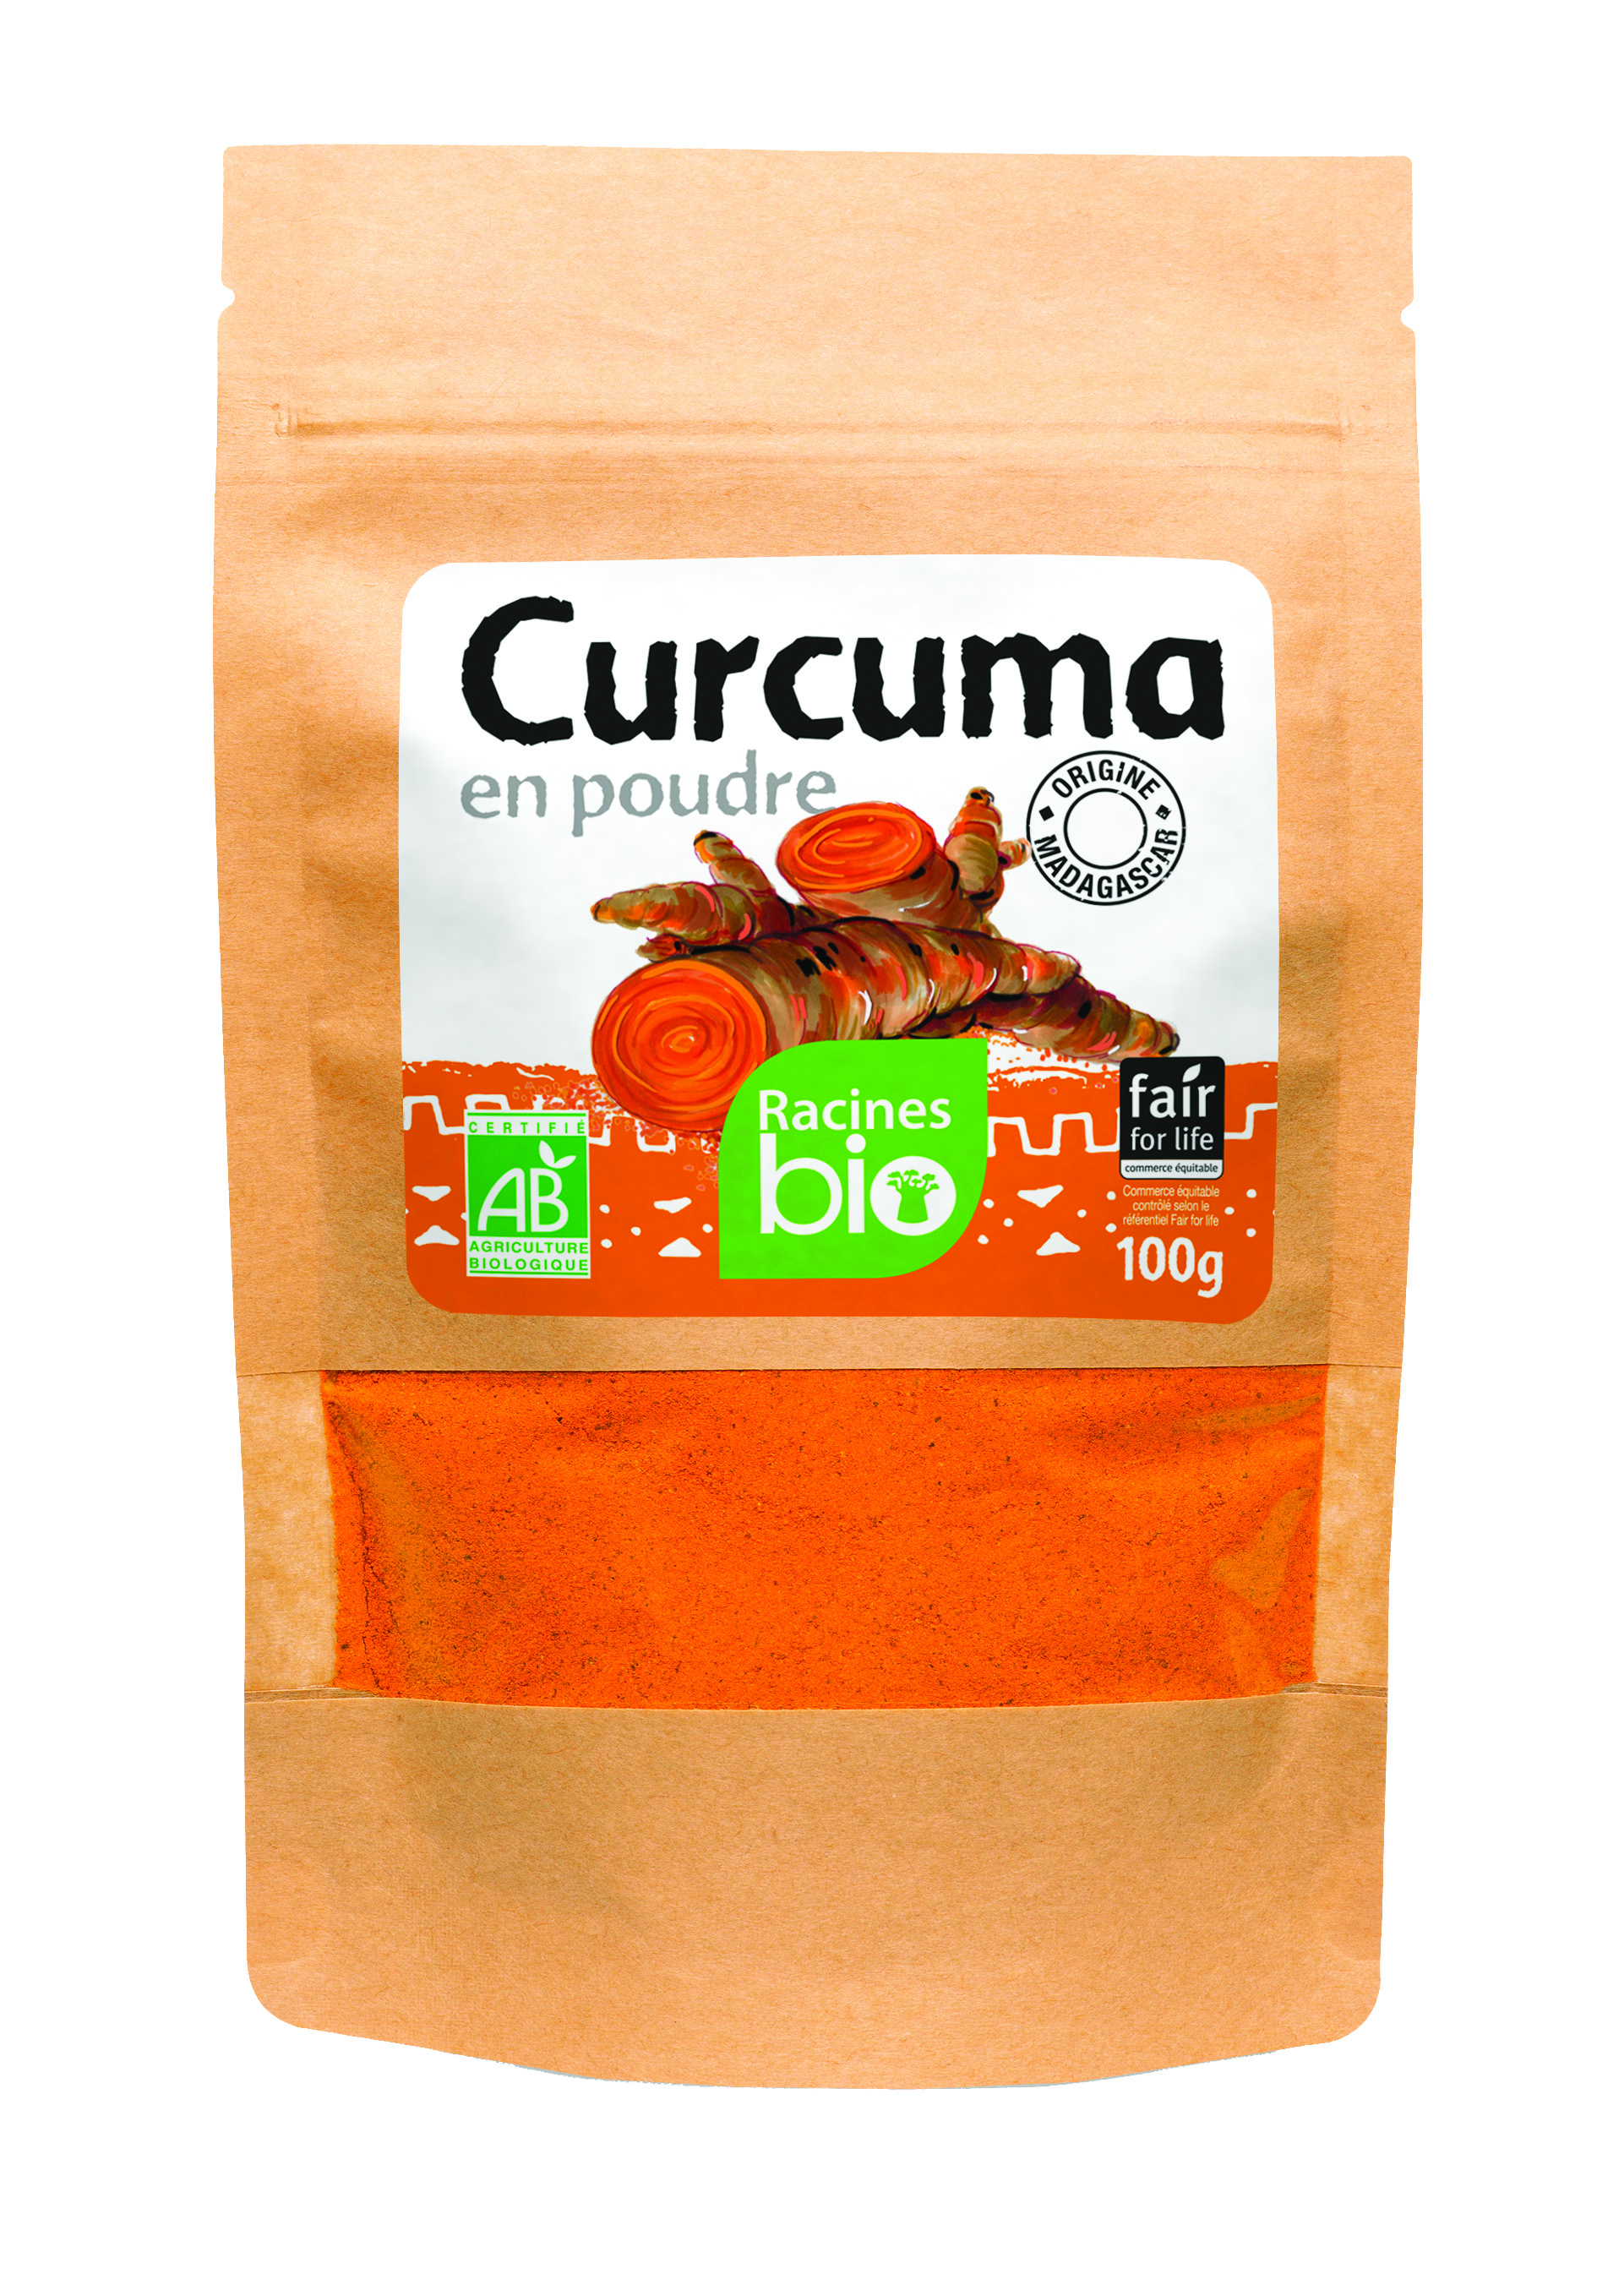 Curcuma En Poudre (20 X 100 G) - Racines Bio